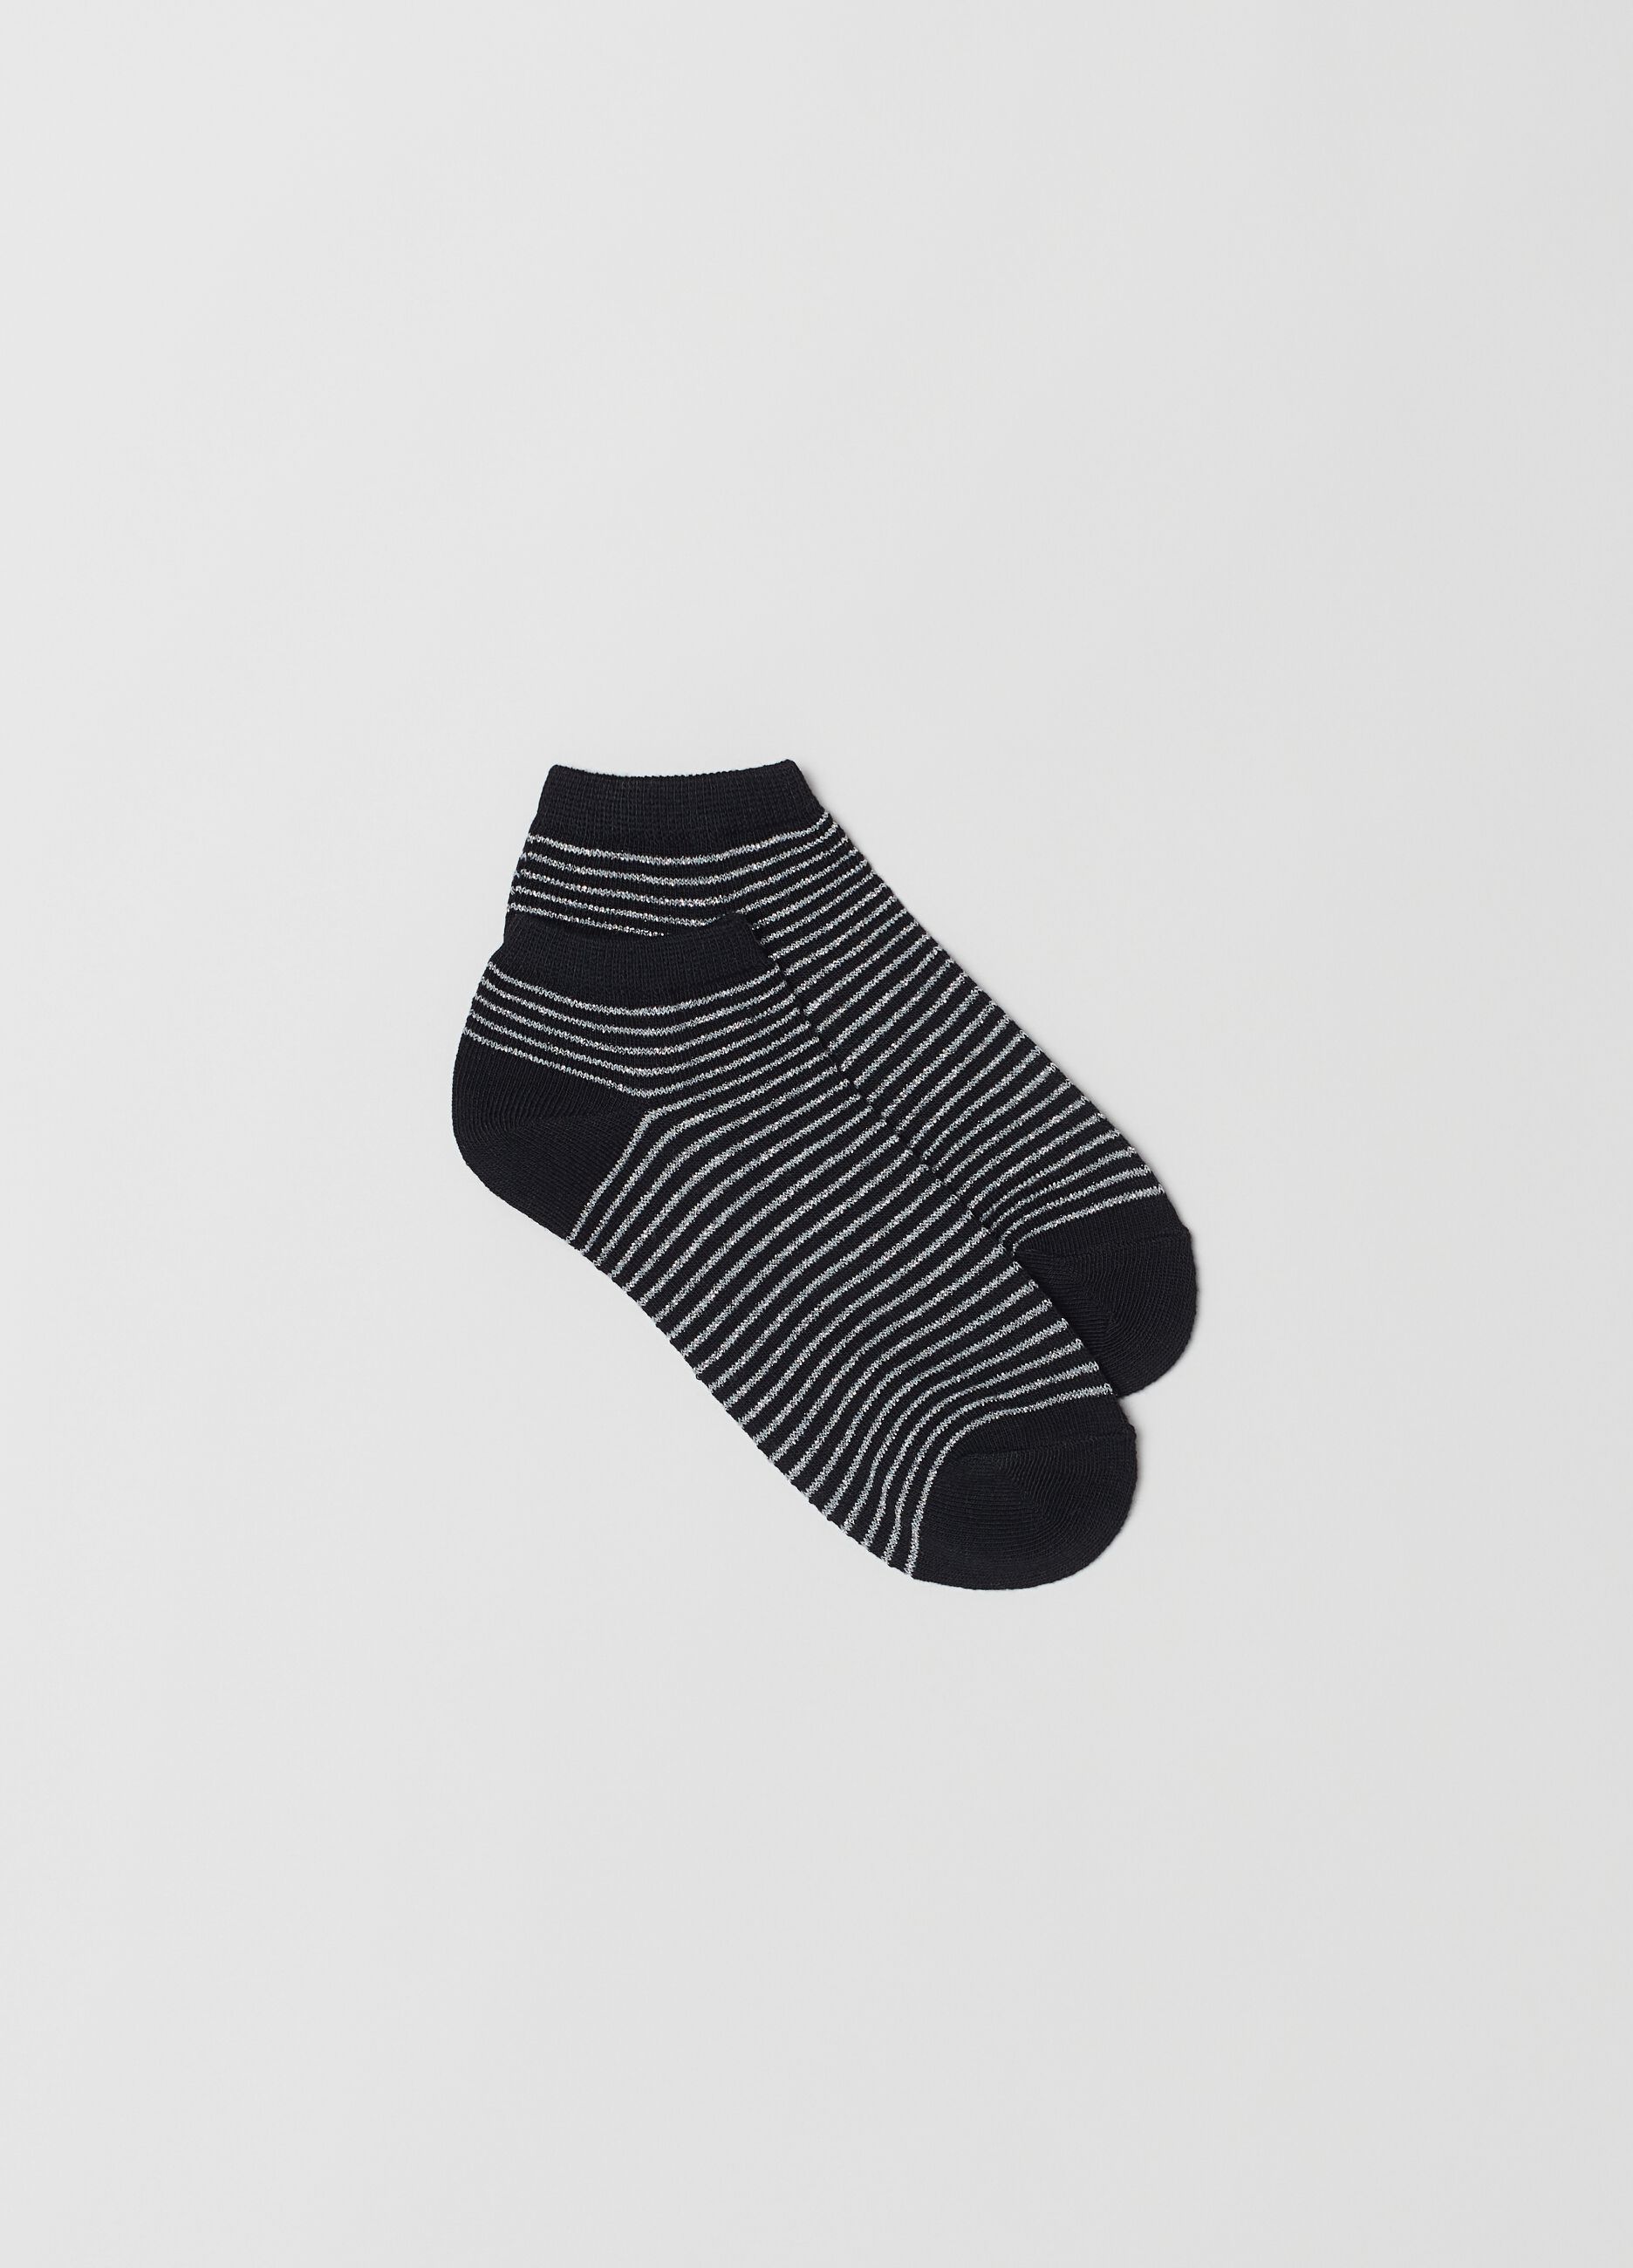 Multipack siete calcetines invisibles diferentes estampados